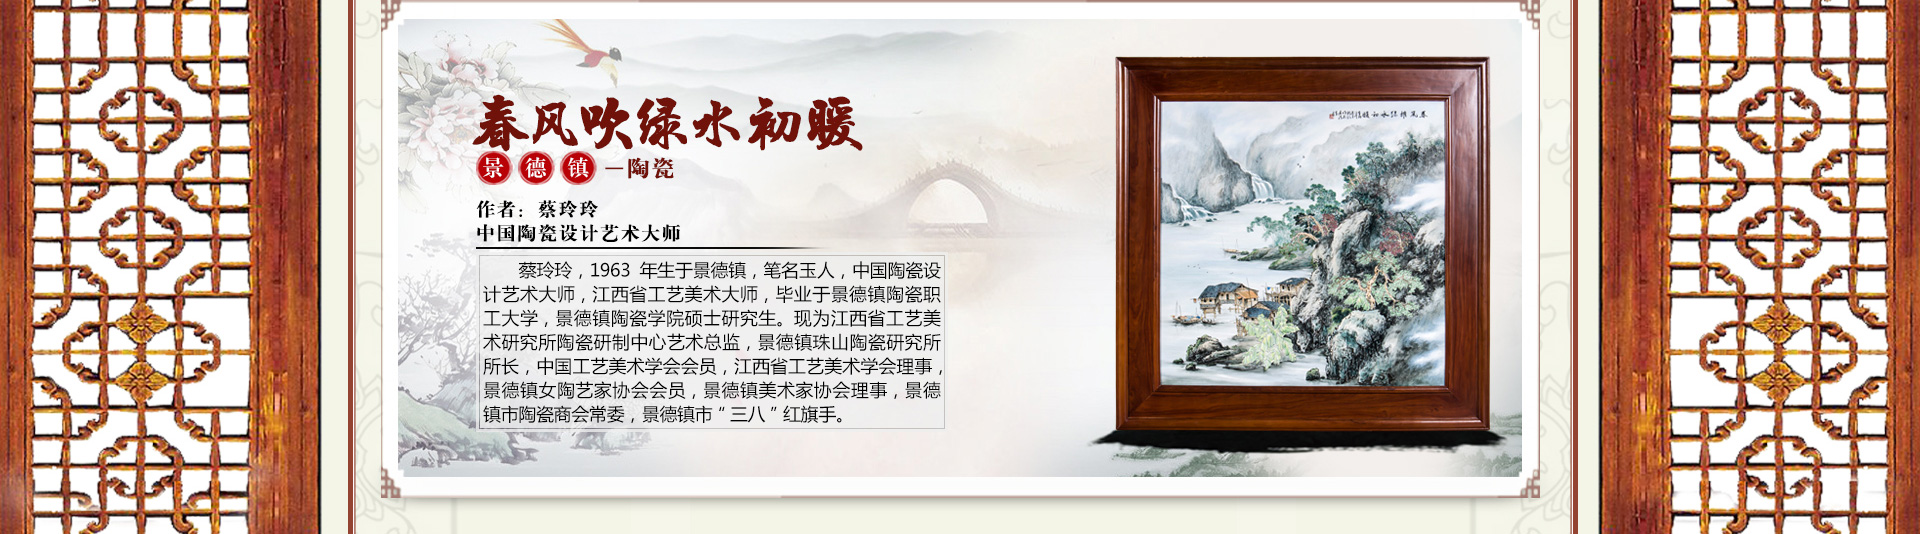 蔡玲玲《春风吹绿水初暖》中国陶瓷设计艺术大师 景德镇陶瓷 爱特猫